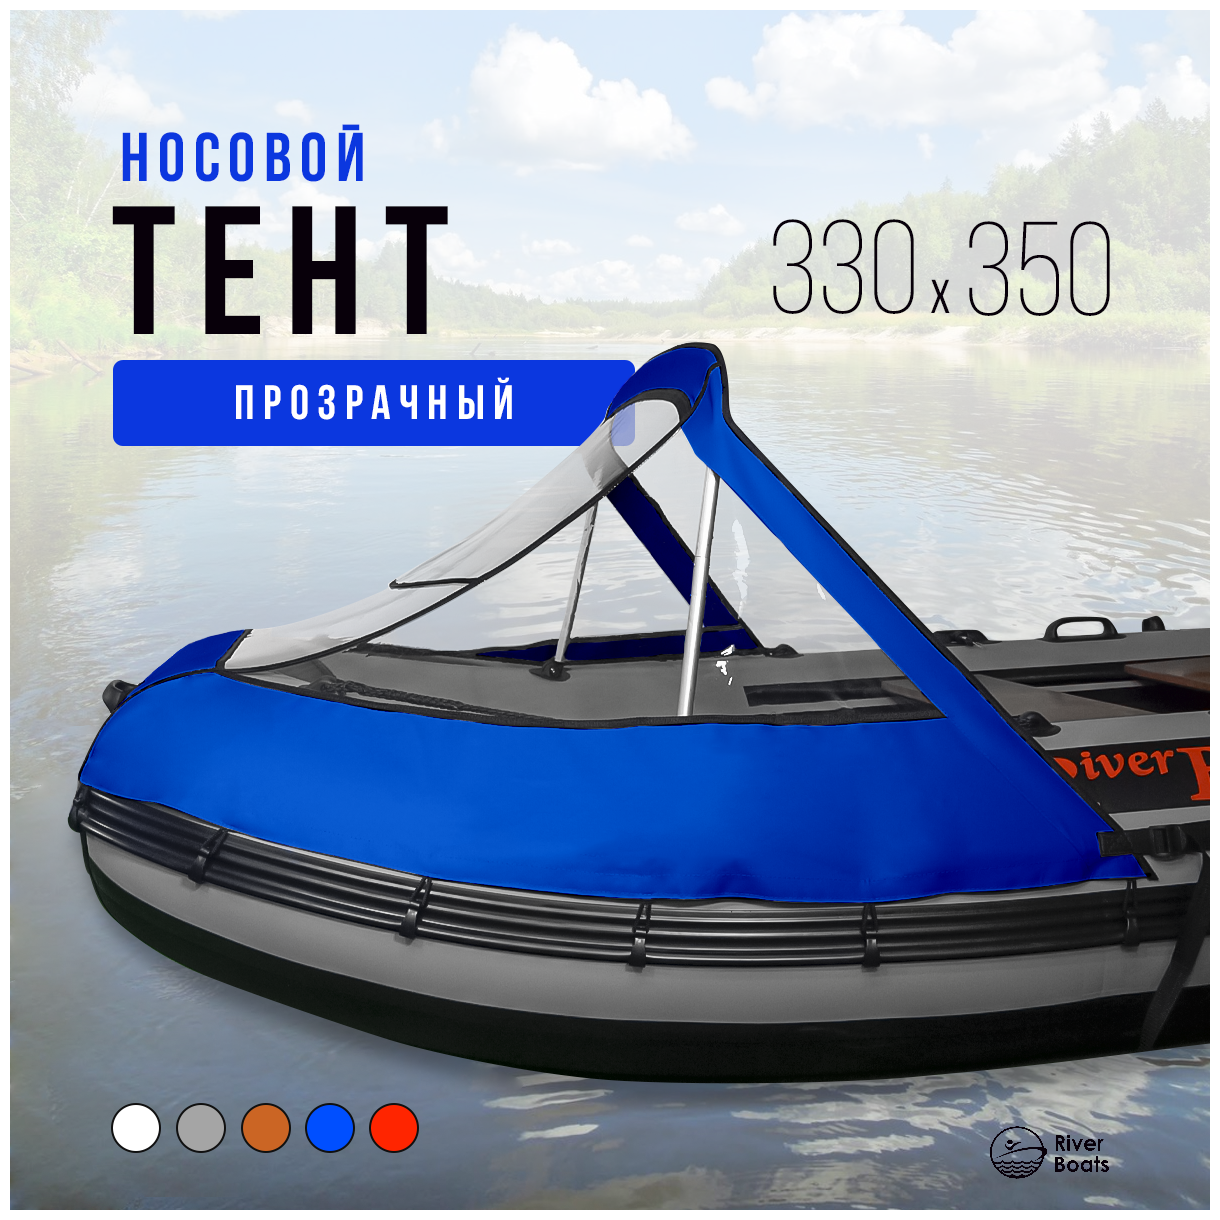 Носовой тент прозрачный для лодки ПВХ 330-350 (синий)